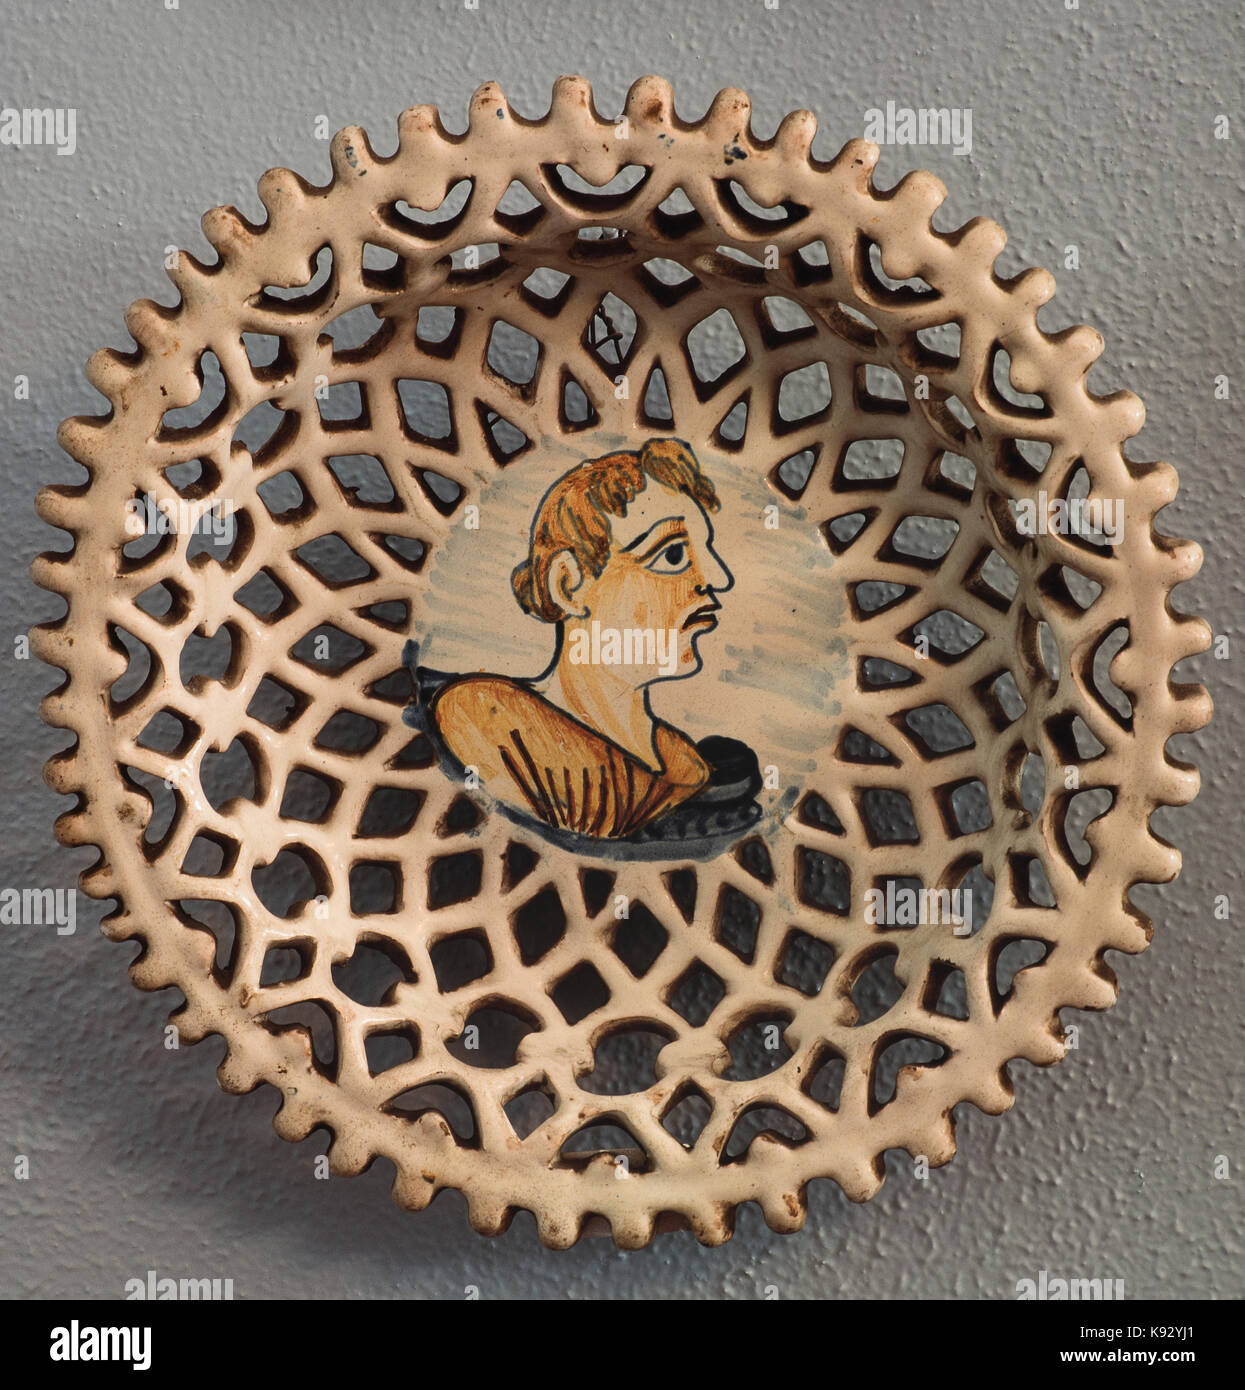 Italy Abruzzo Loreto Aprutino Acerbo ceramic museum Plate Hand painted Stock Photo